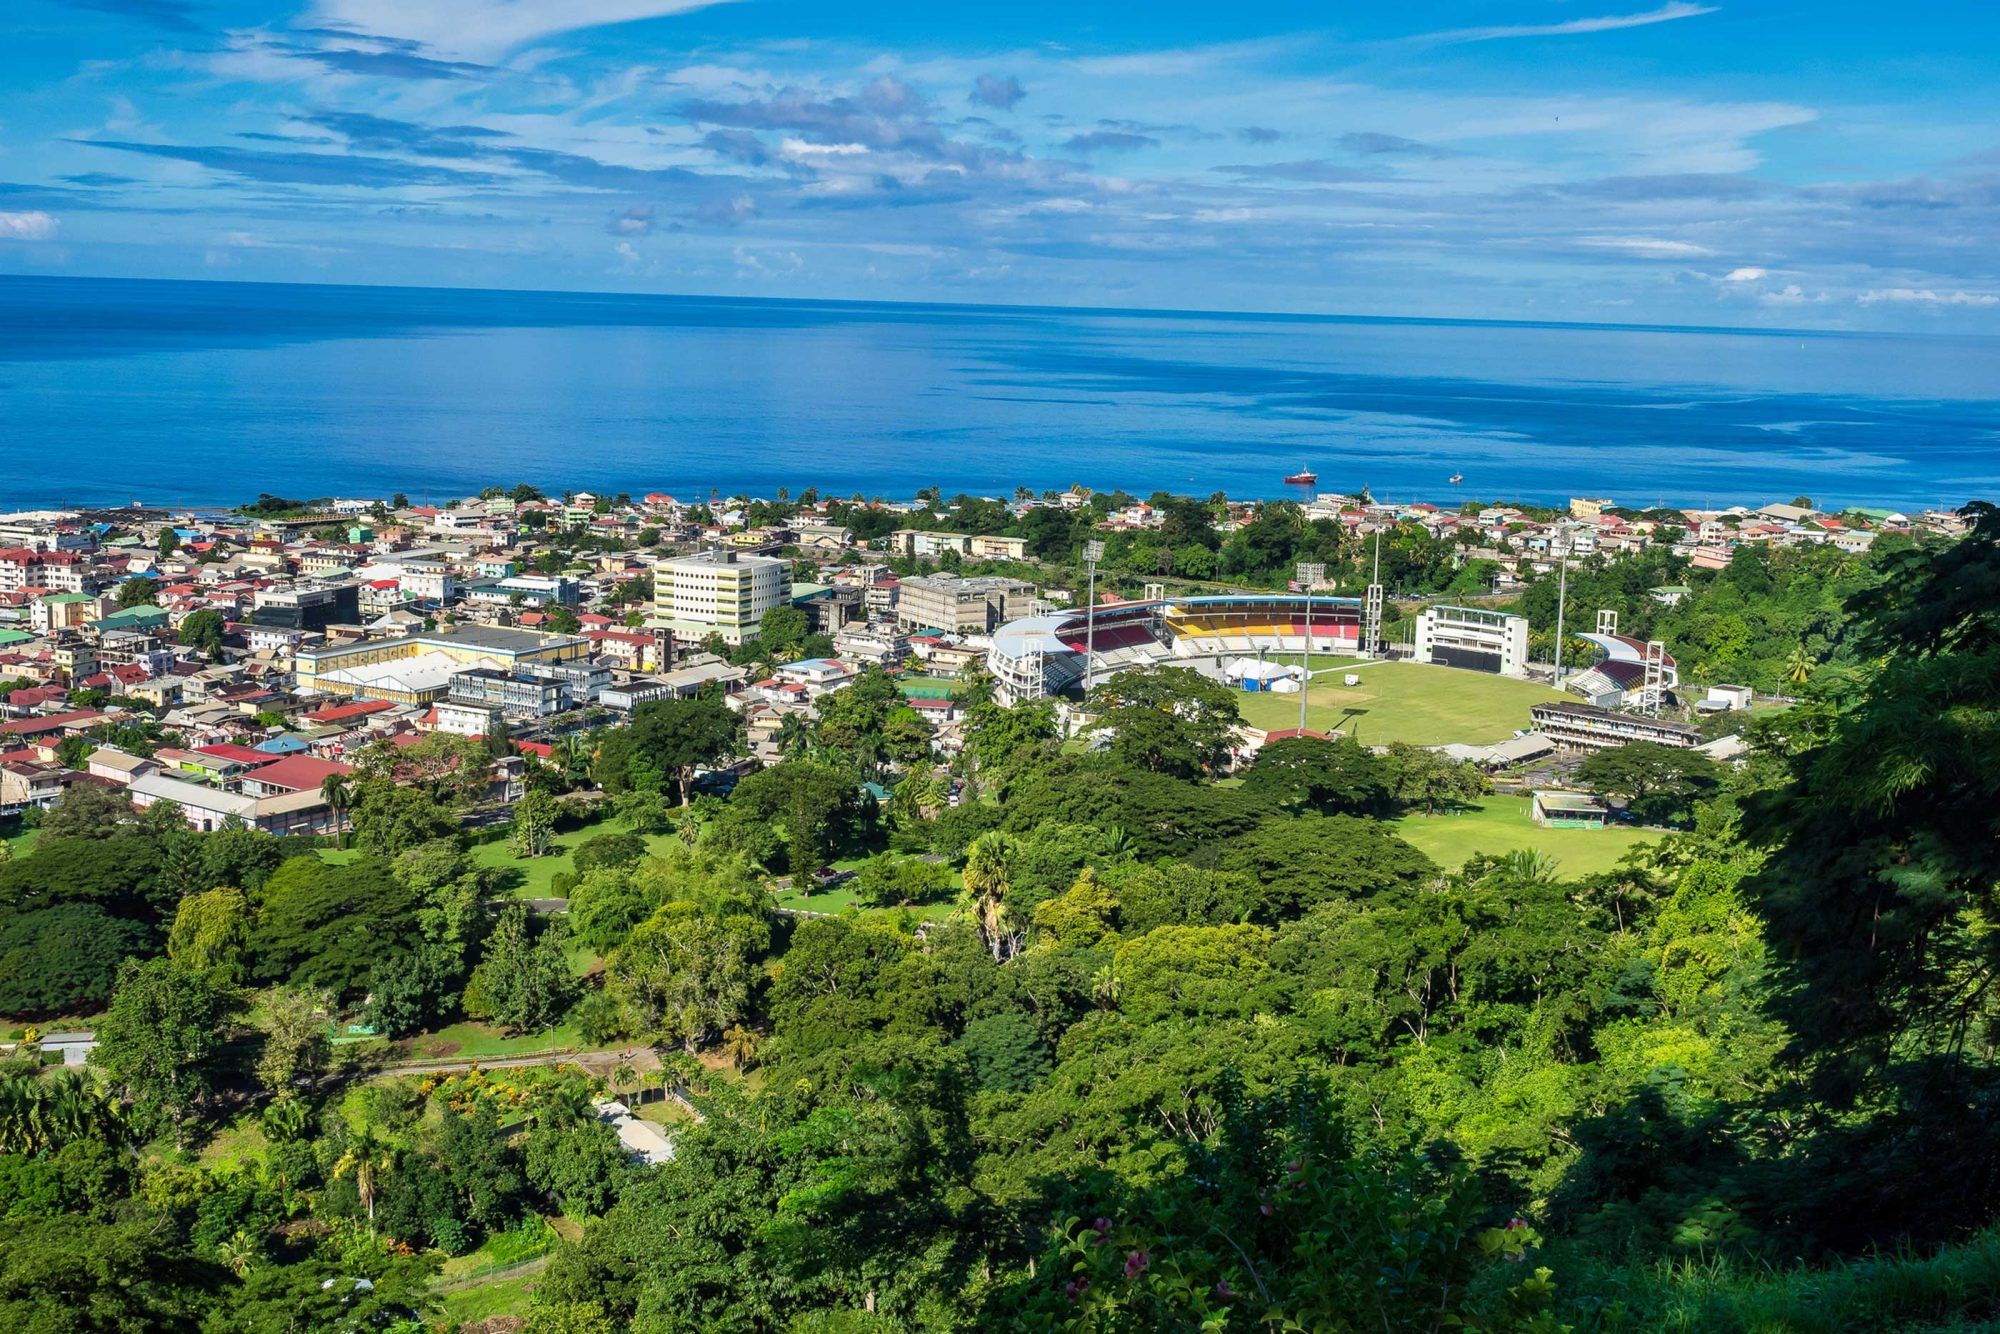 Malerischer Blick auf die Stadt Roseau und das Meer, Insel Dominica. Vom kleinen Berg Morne Bruce aus gesehen